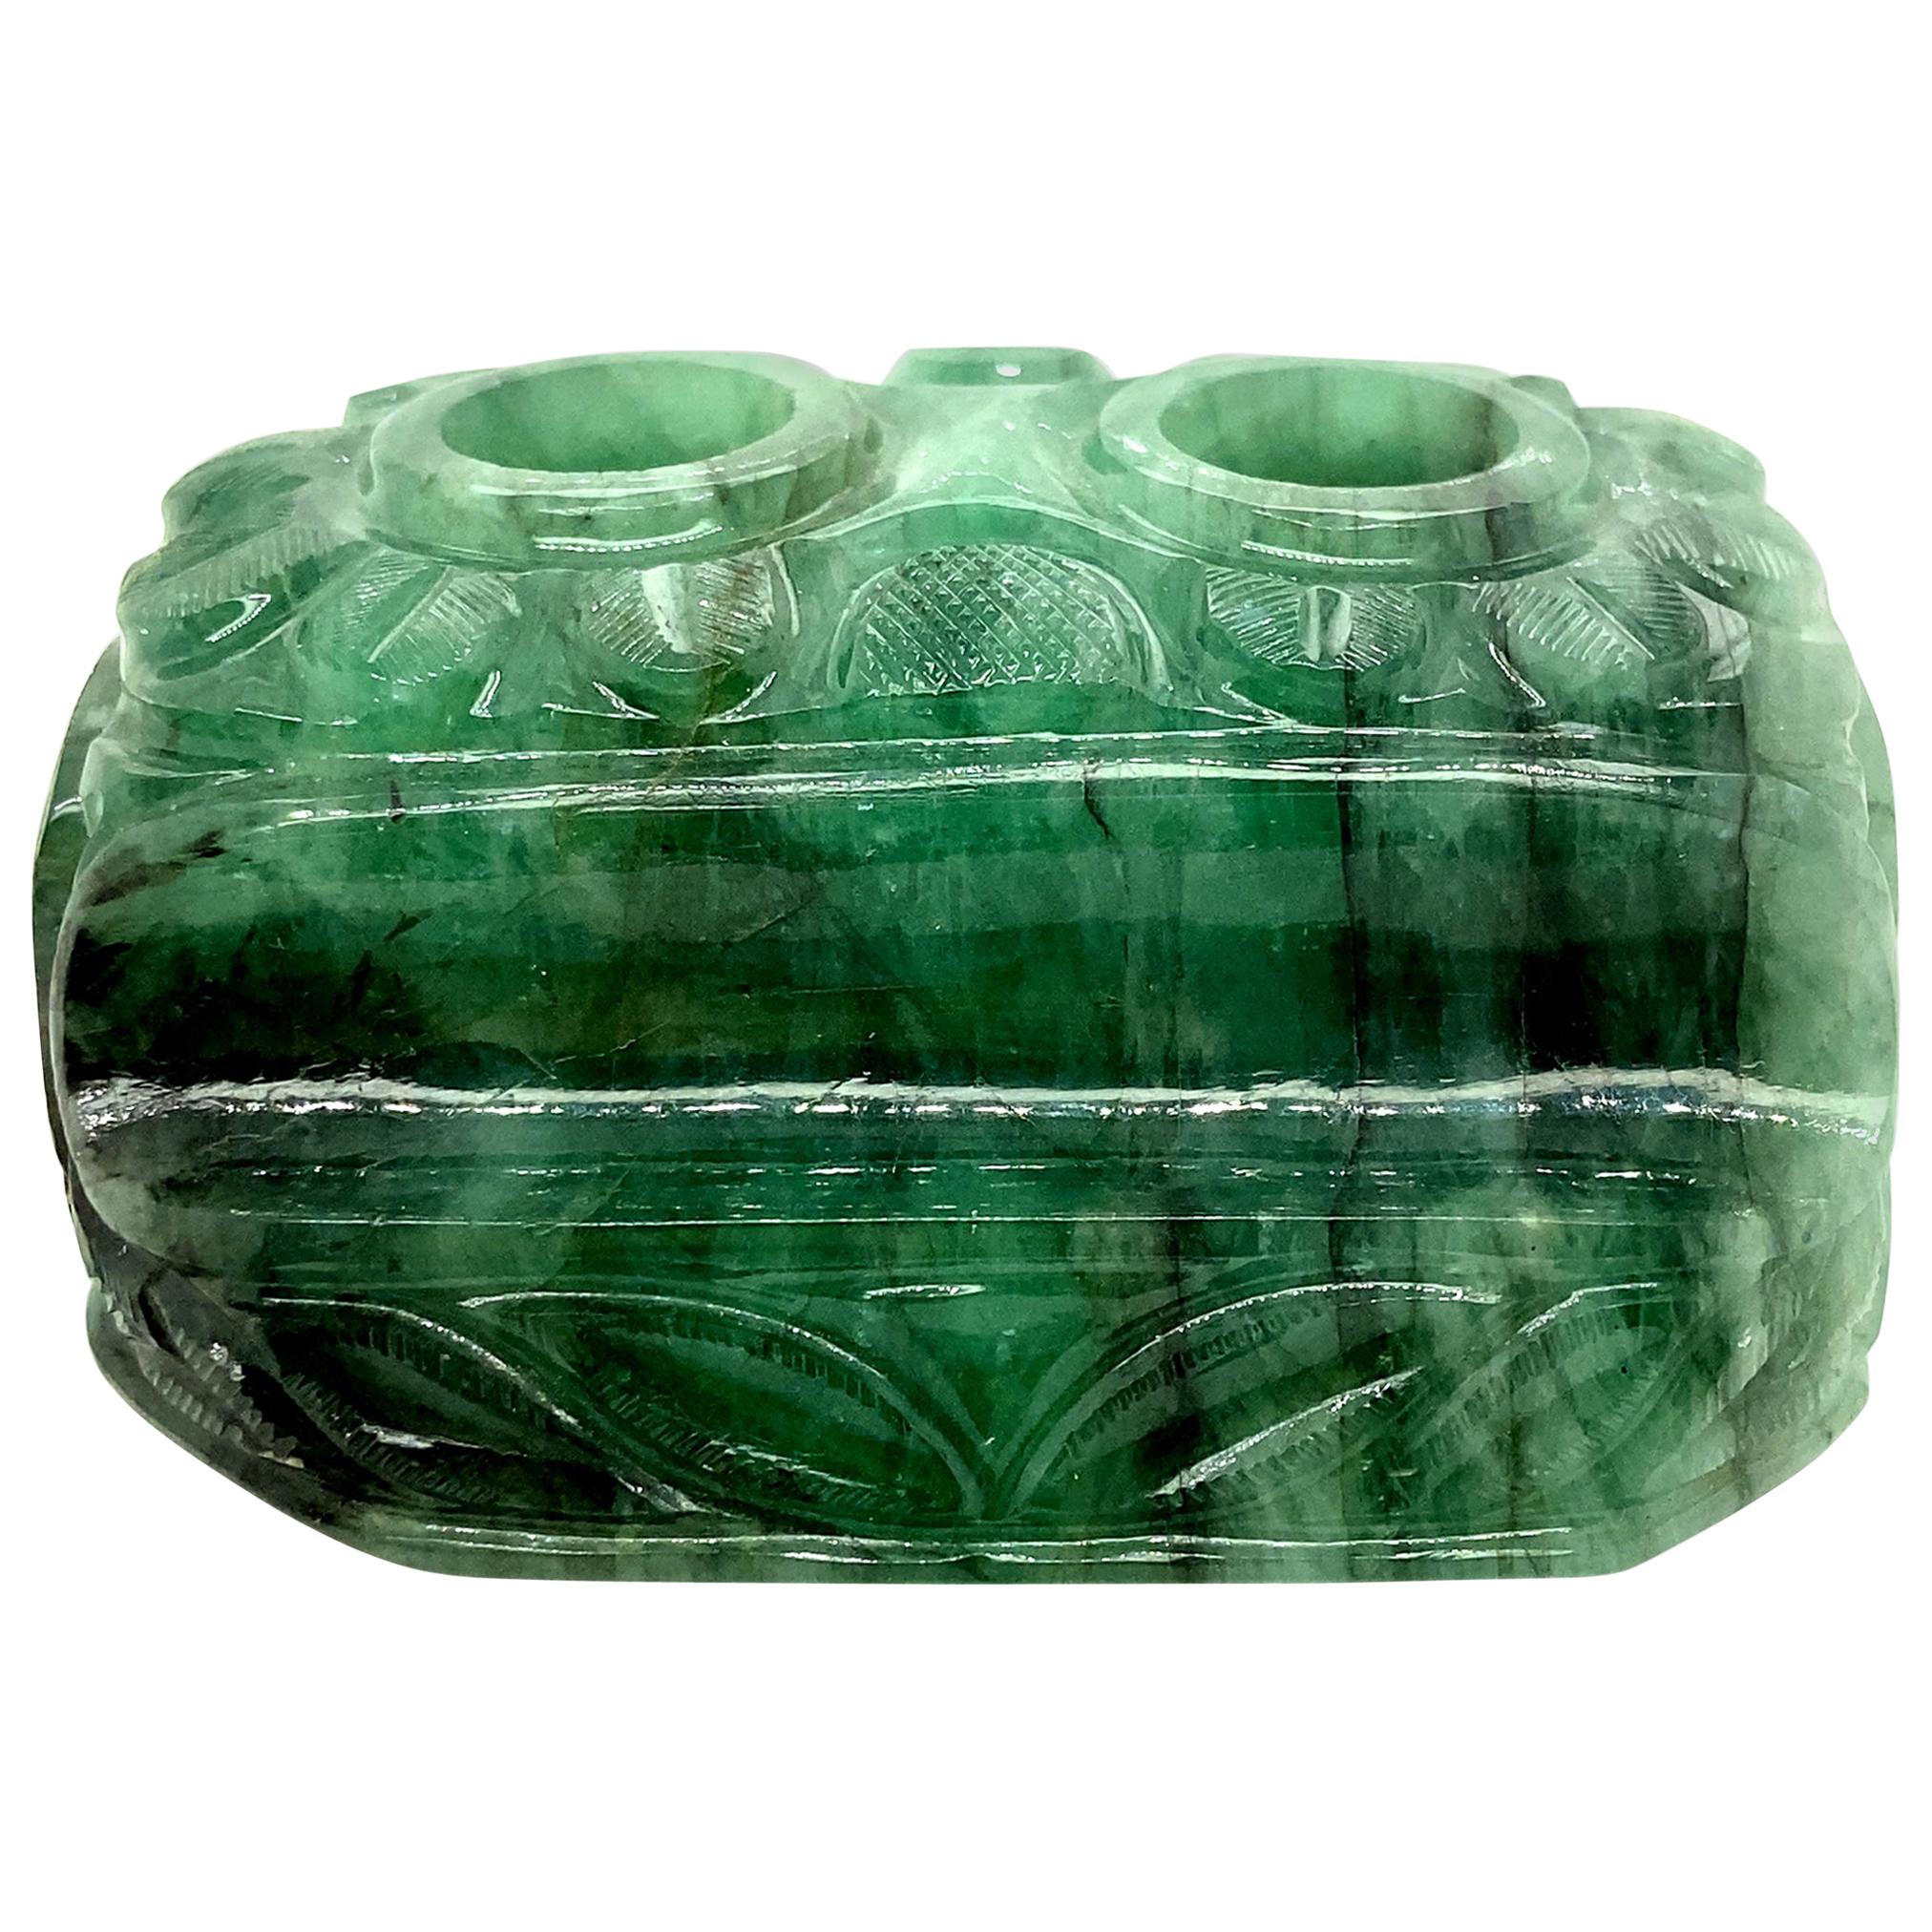 1191 Carat Carved Emerald Pen Holder For Sale